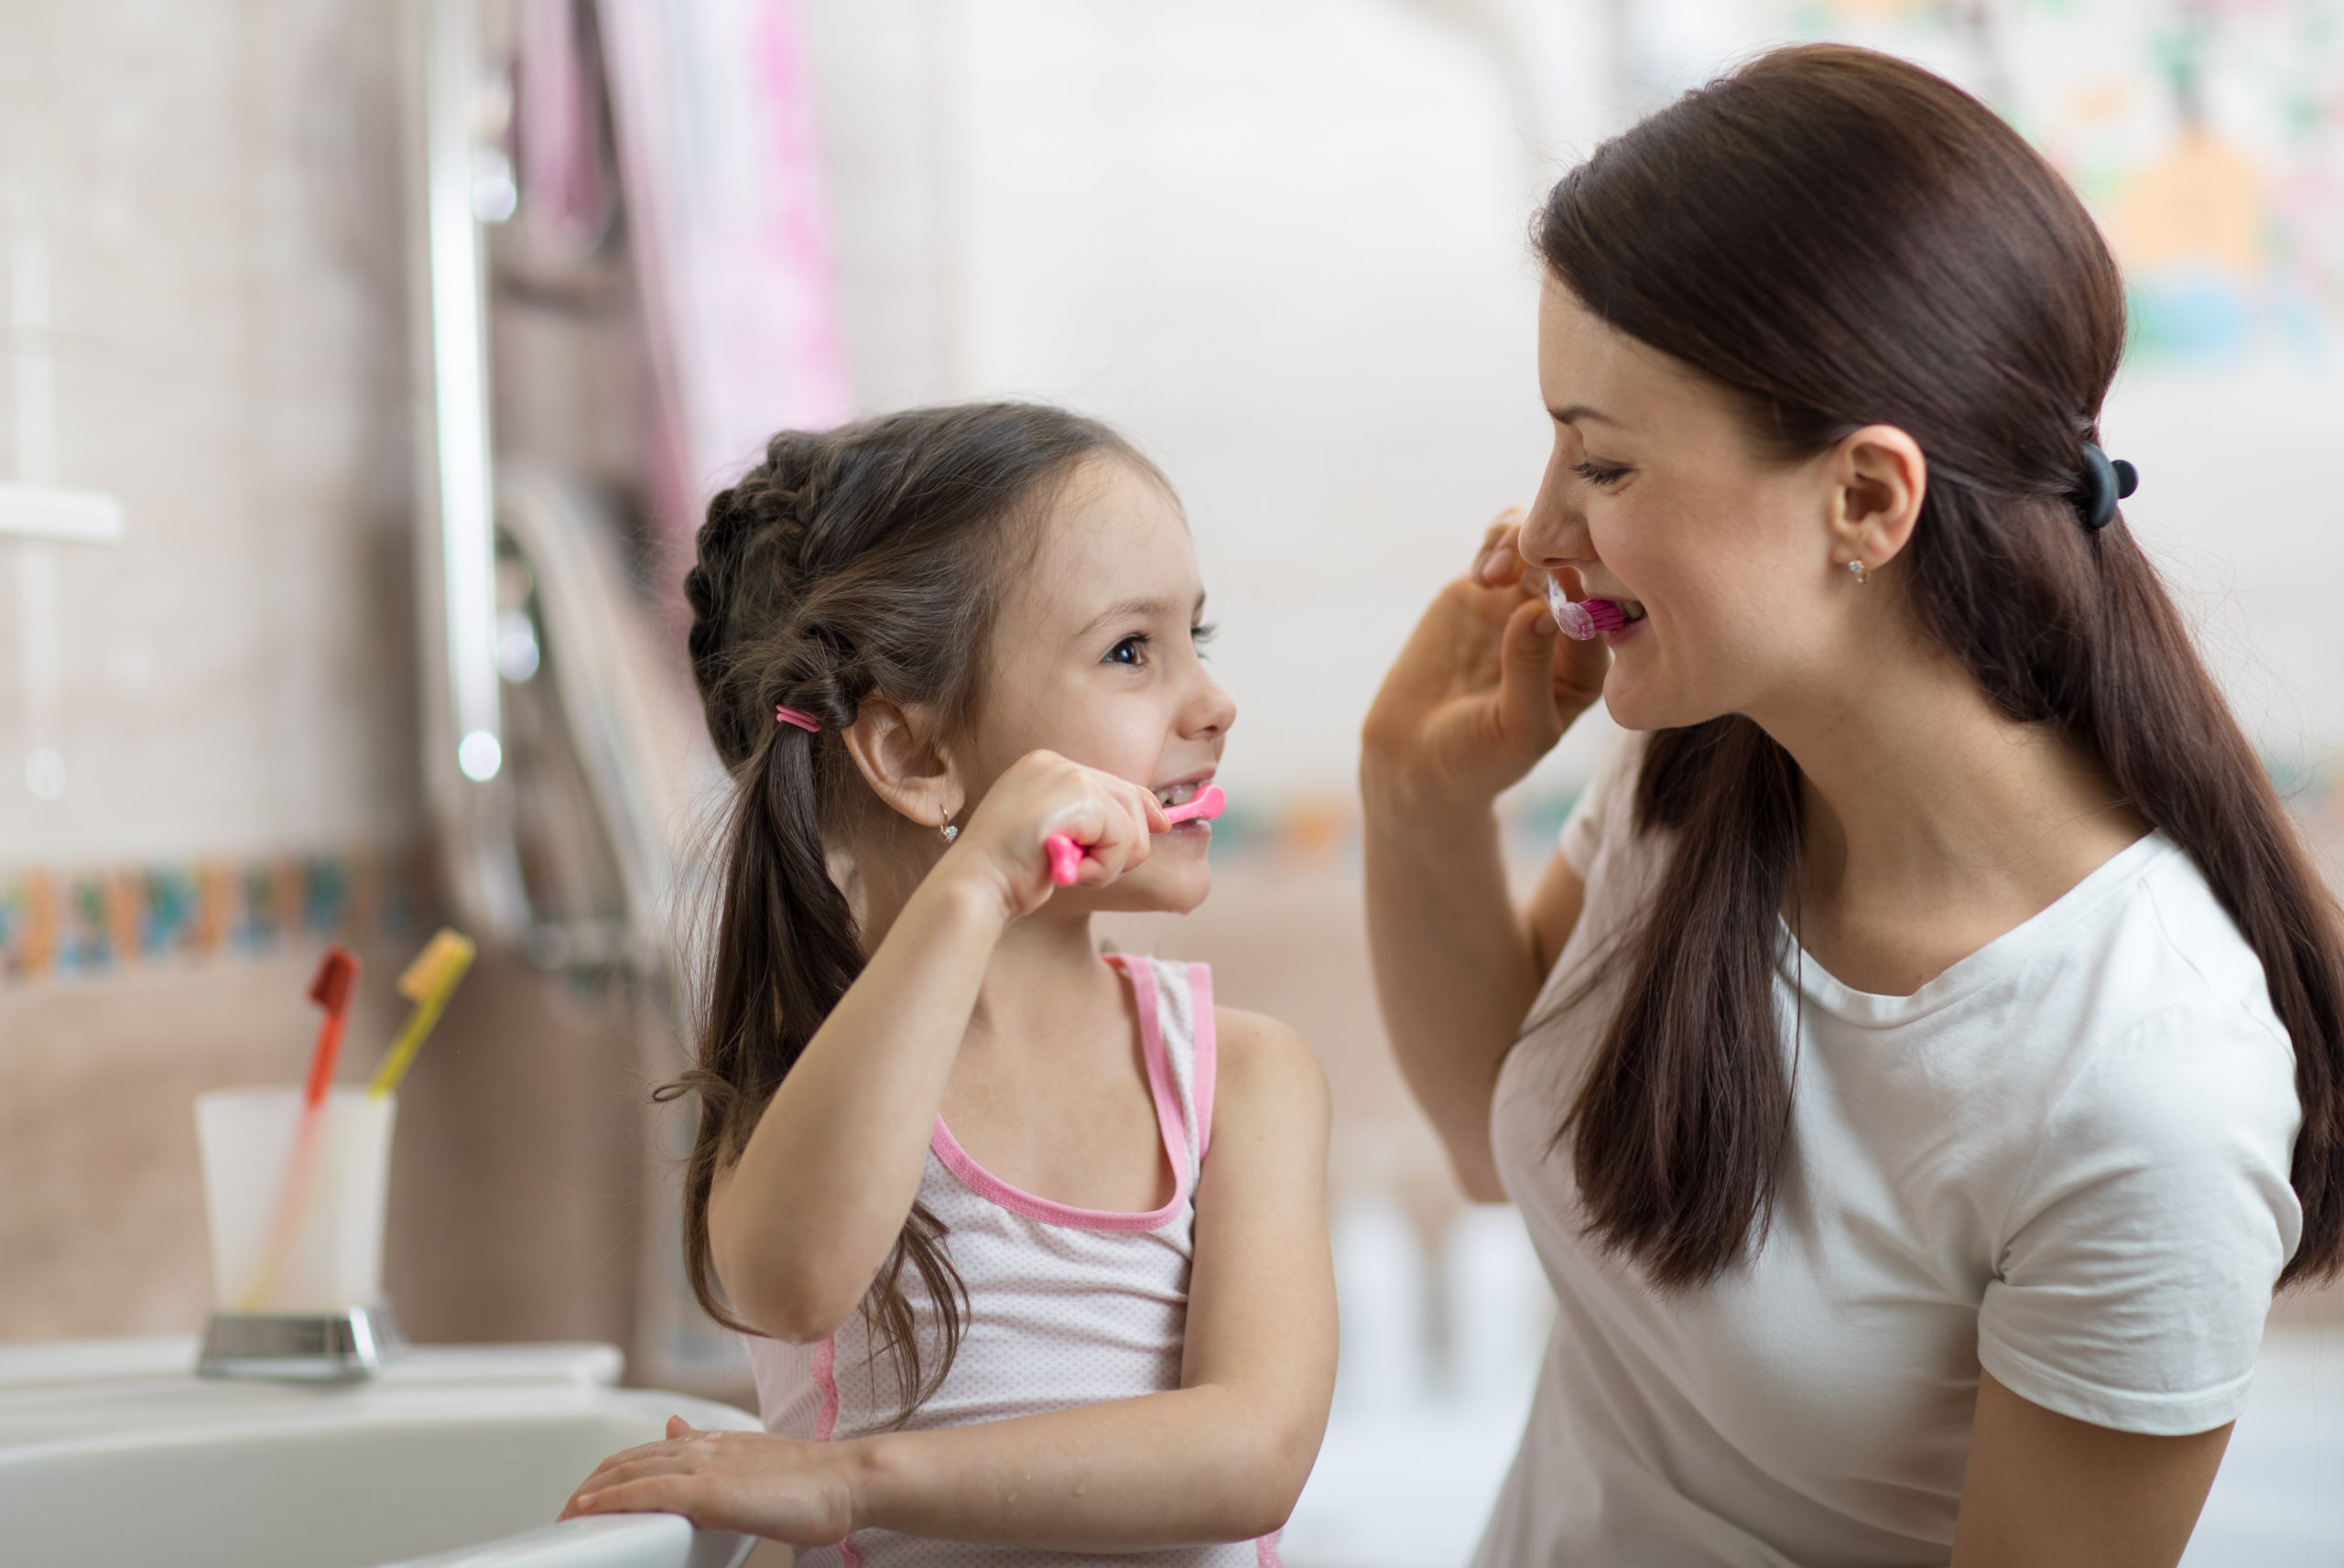 5 Ways to Make Dental Hygiene Fun for Preschoolers - Playgarden Online